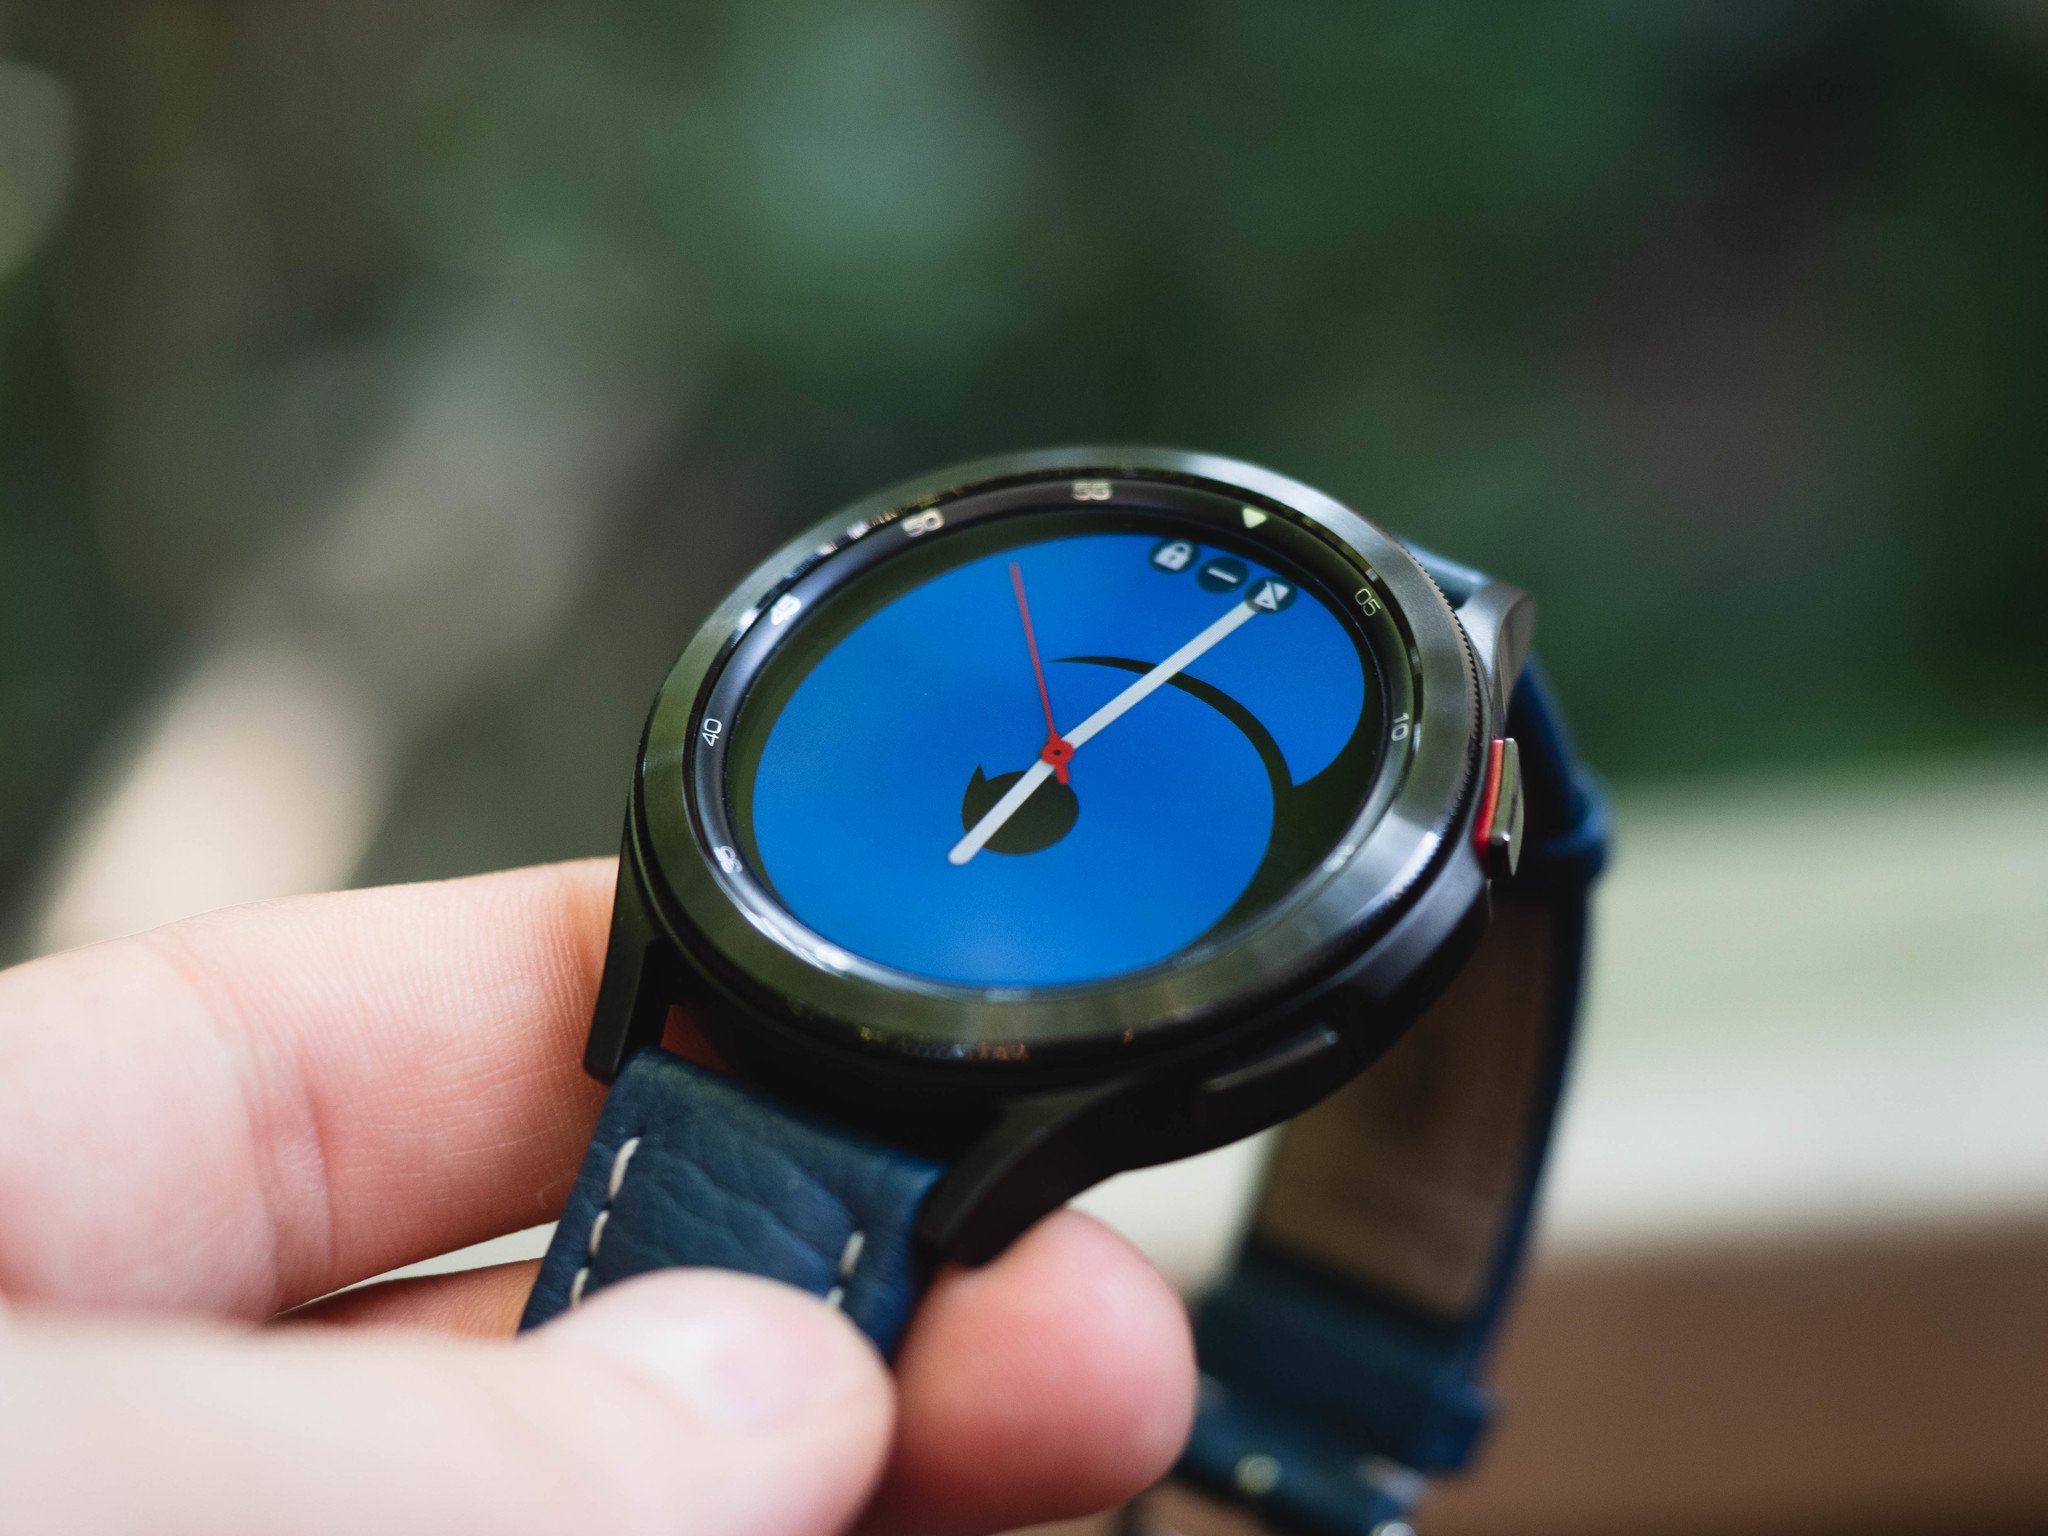 Piepen ik luister naar muziek Ontdekking Best Samsung watch 2022 | Android Central